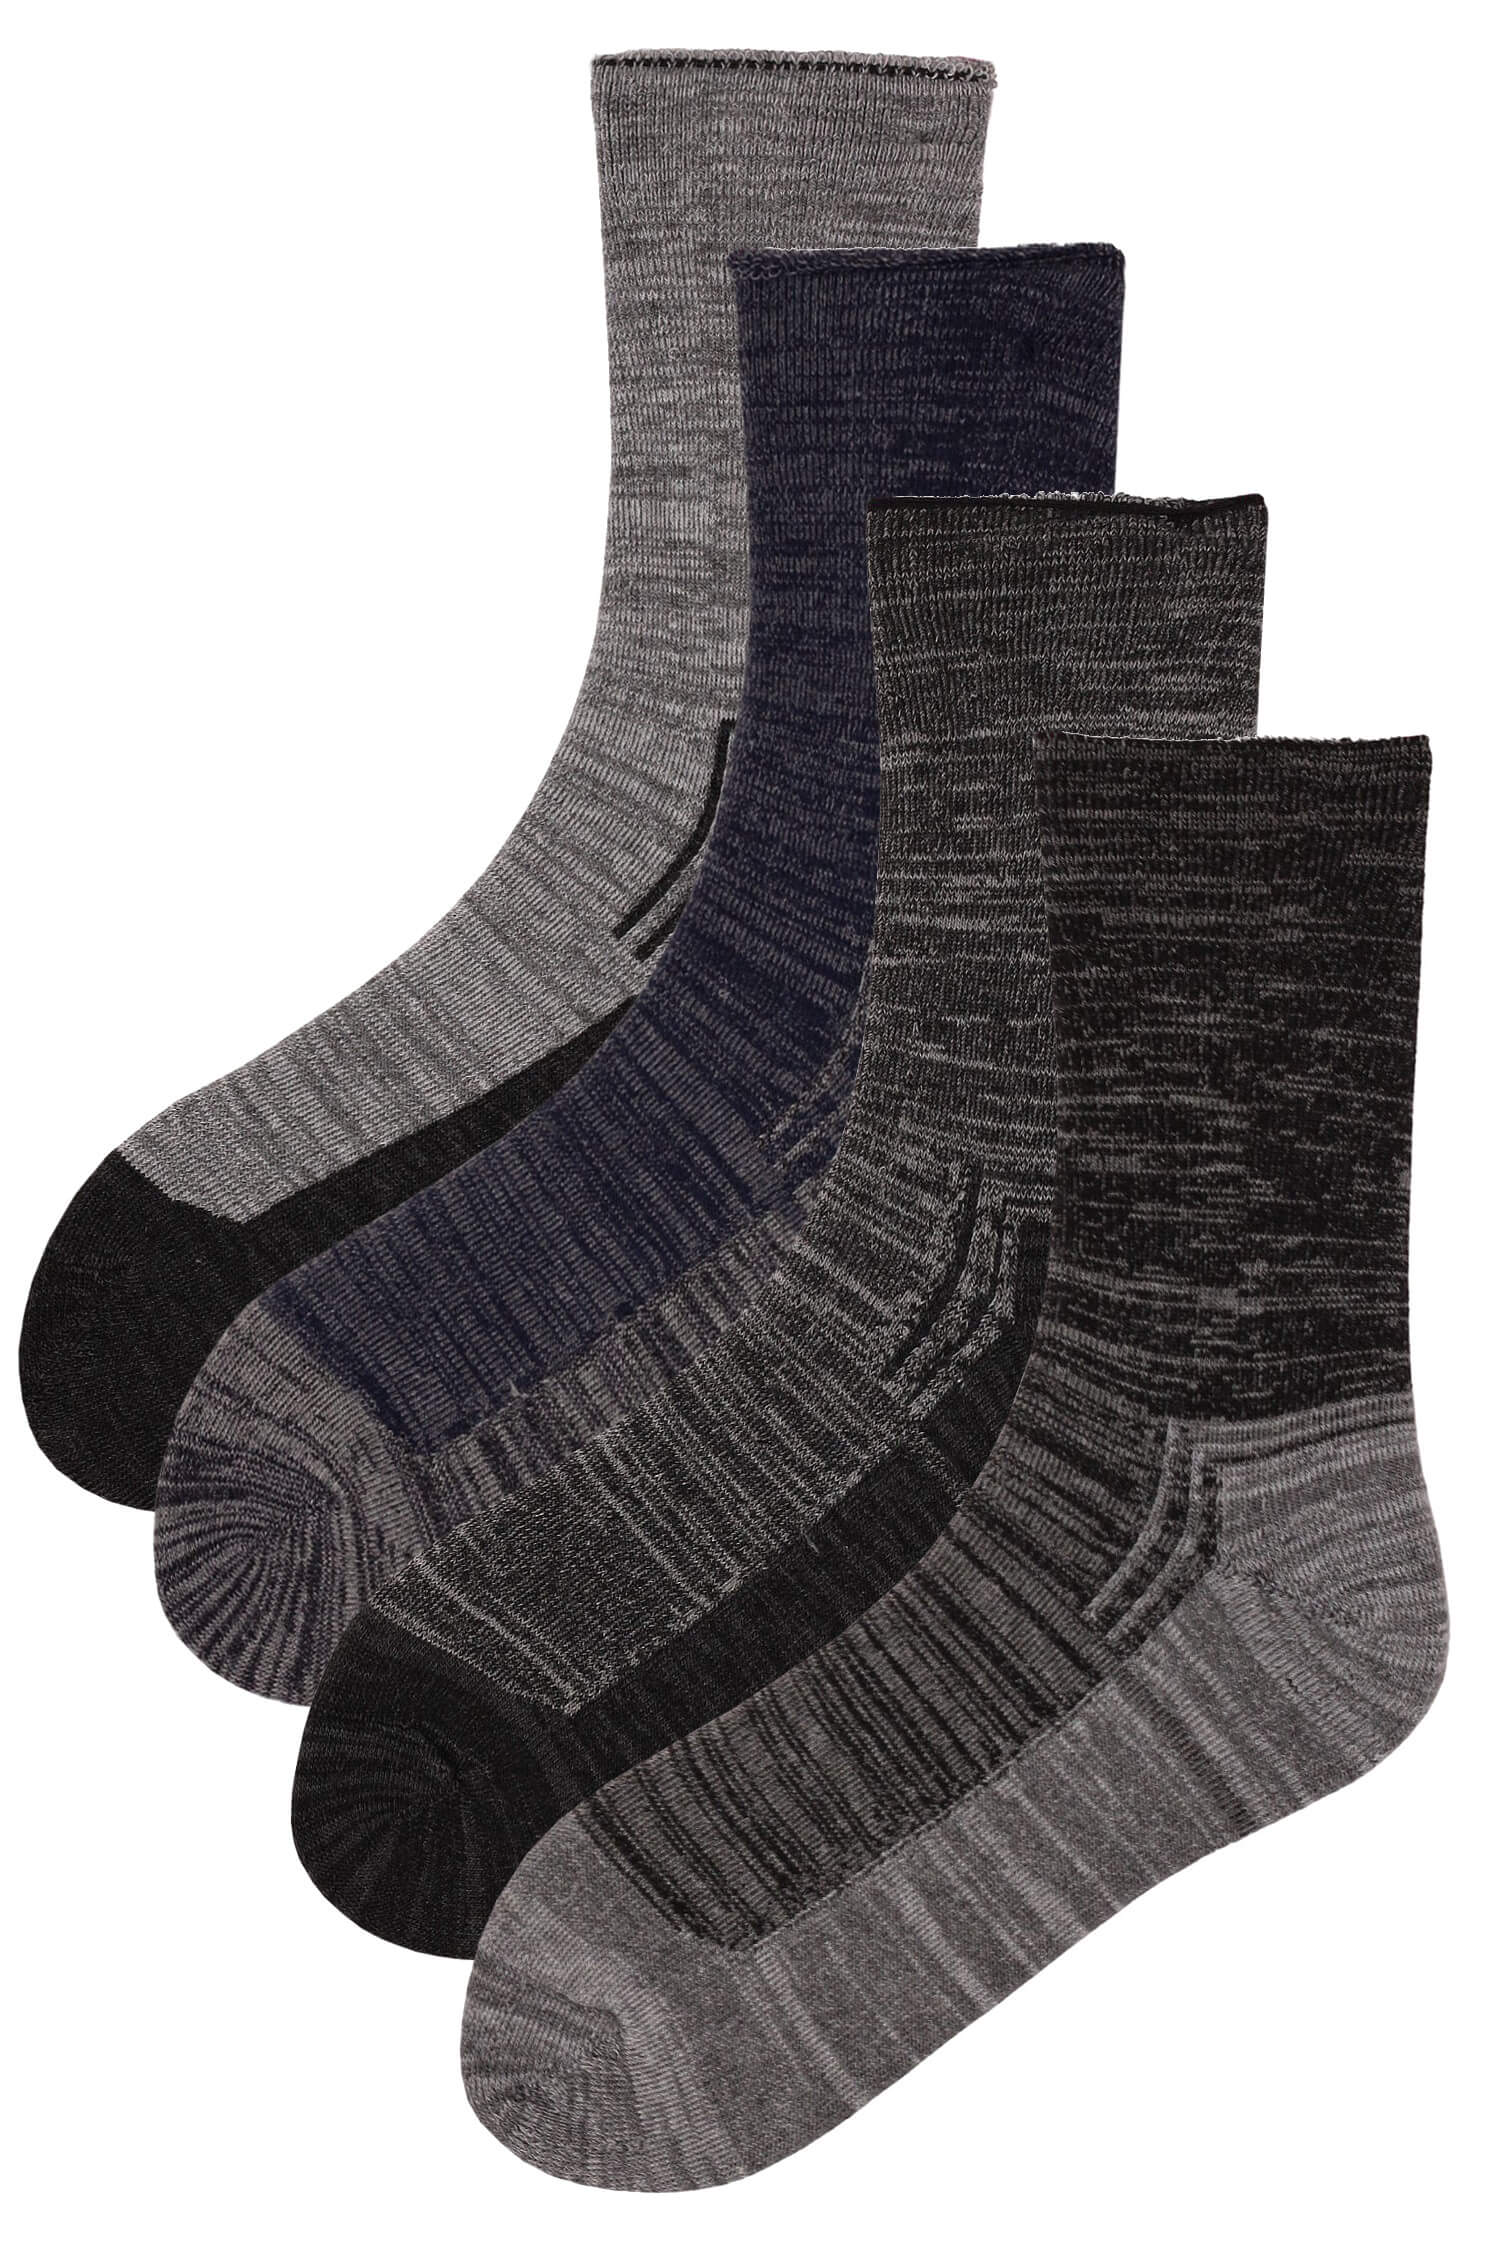 Pánské ponožky thermo bavlna SSM74 - 2 páry vícebarevná 40-44